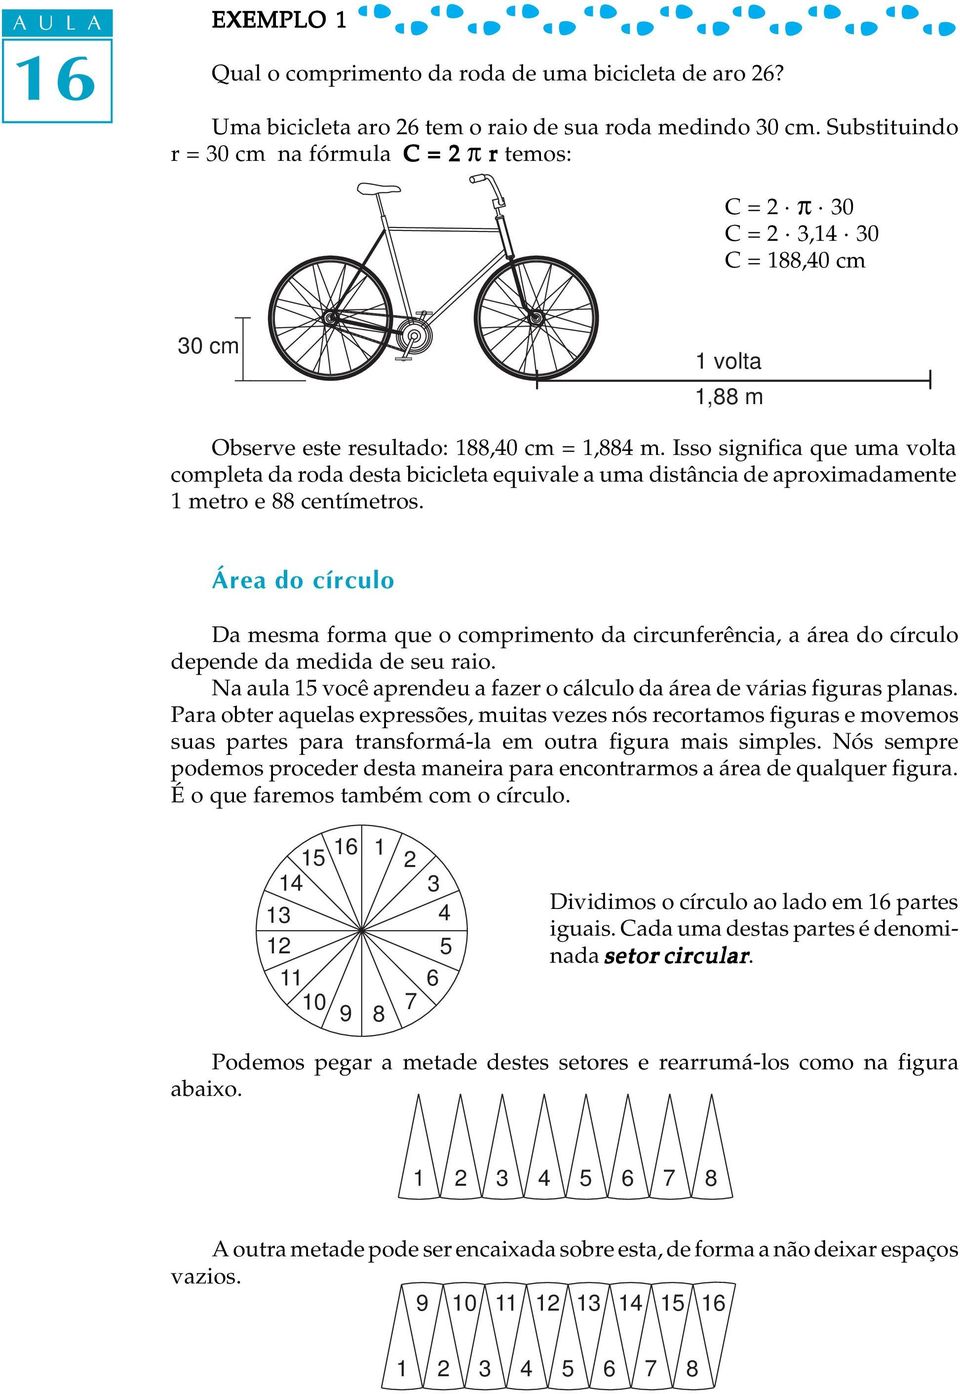 Isso significa que uma volta completa da roda desta bicicleta equivale a uma distância de aproximadamente 1 metro e 88 centímetros.